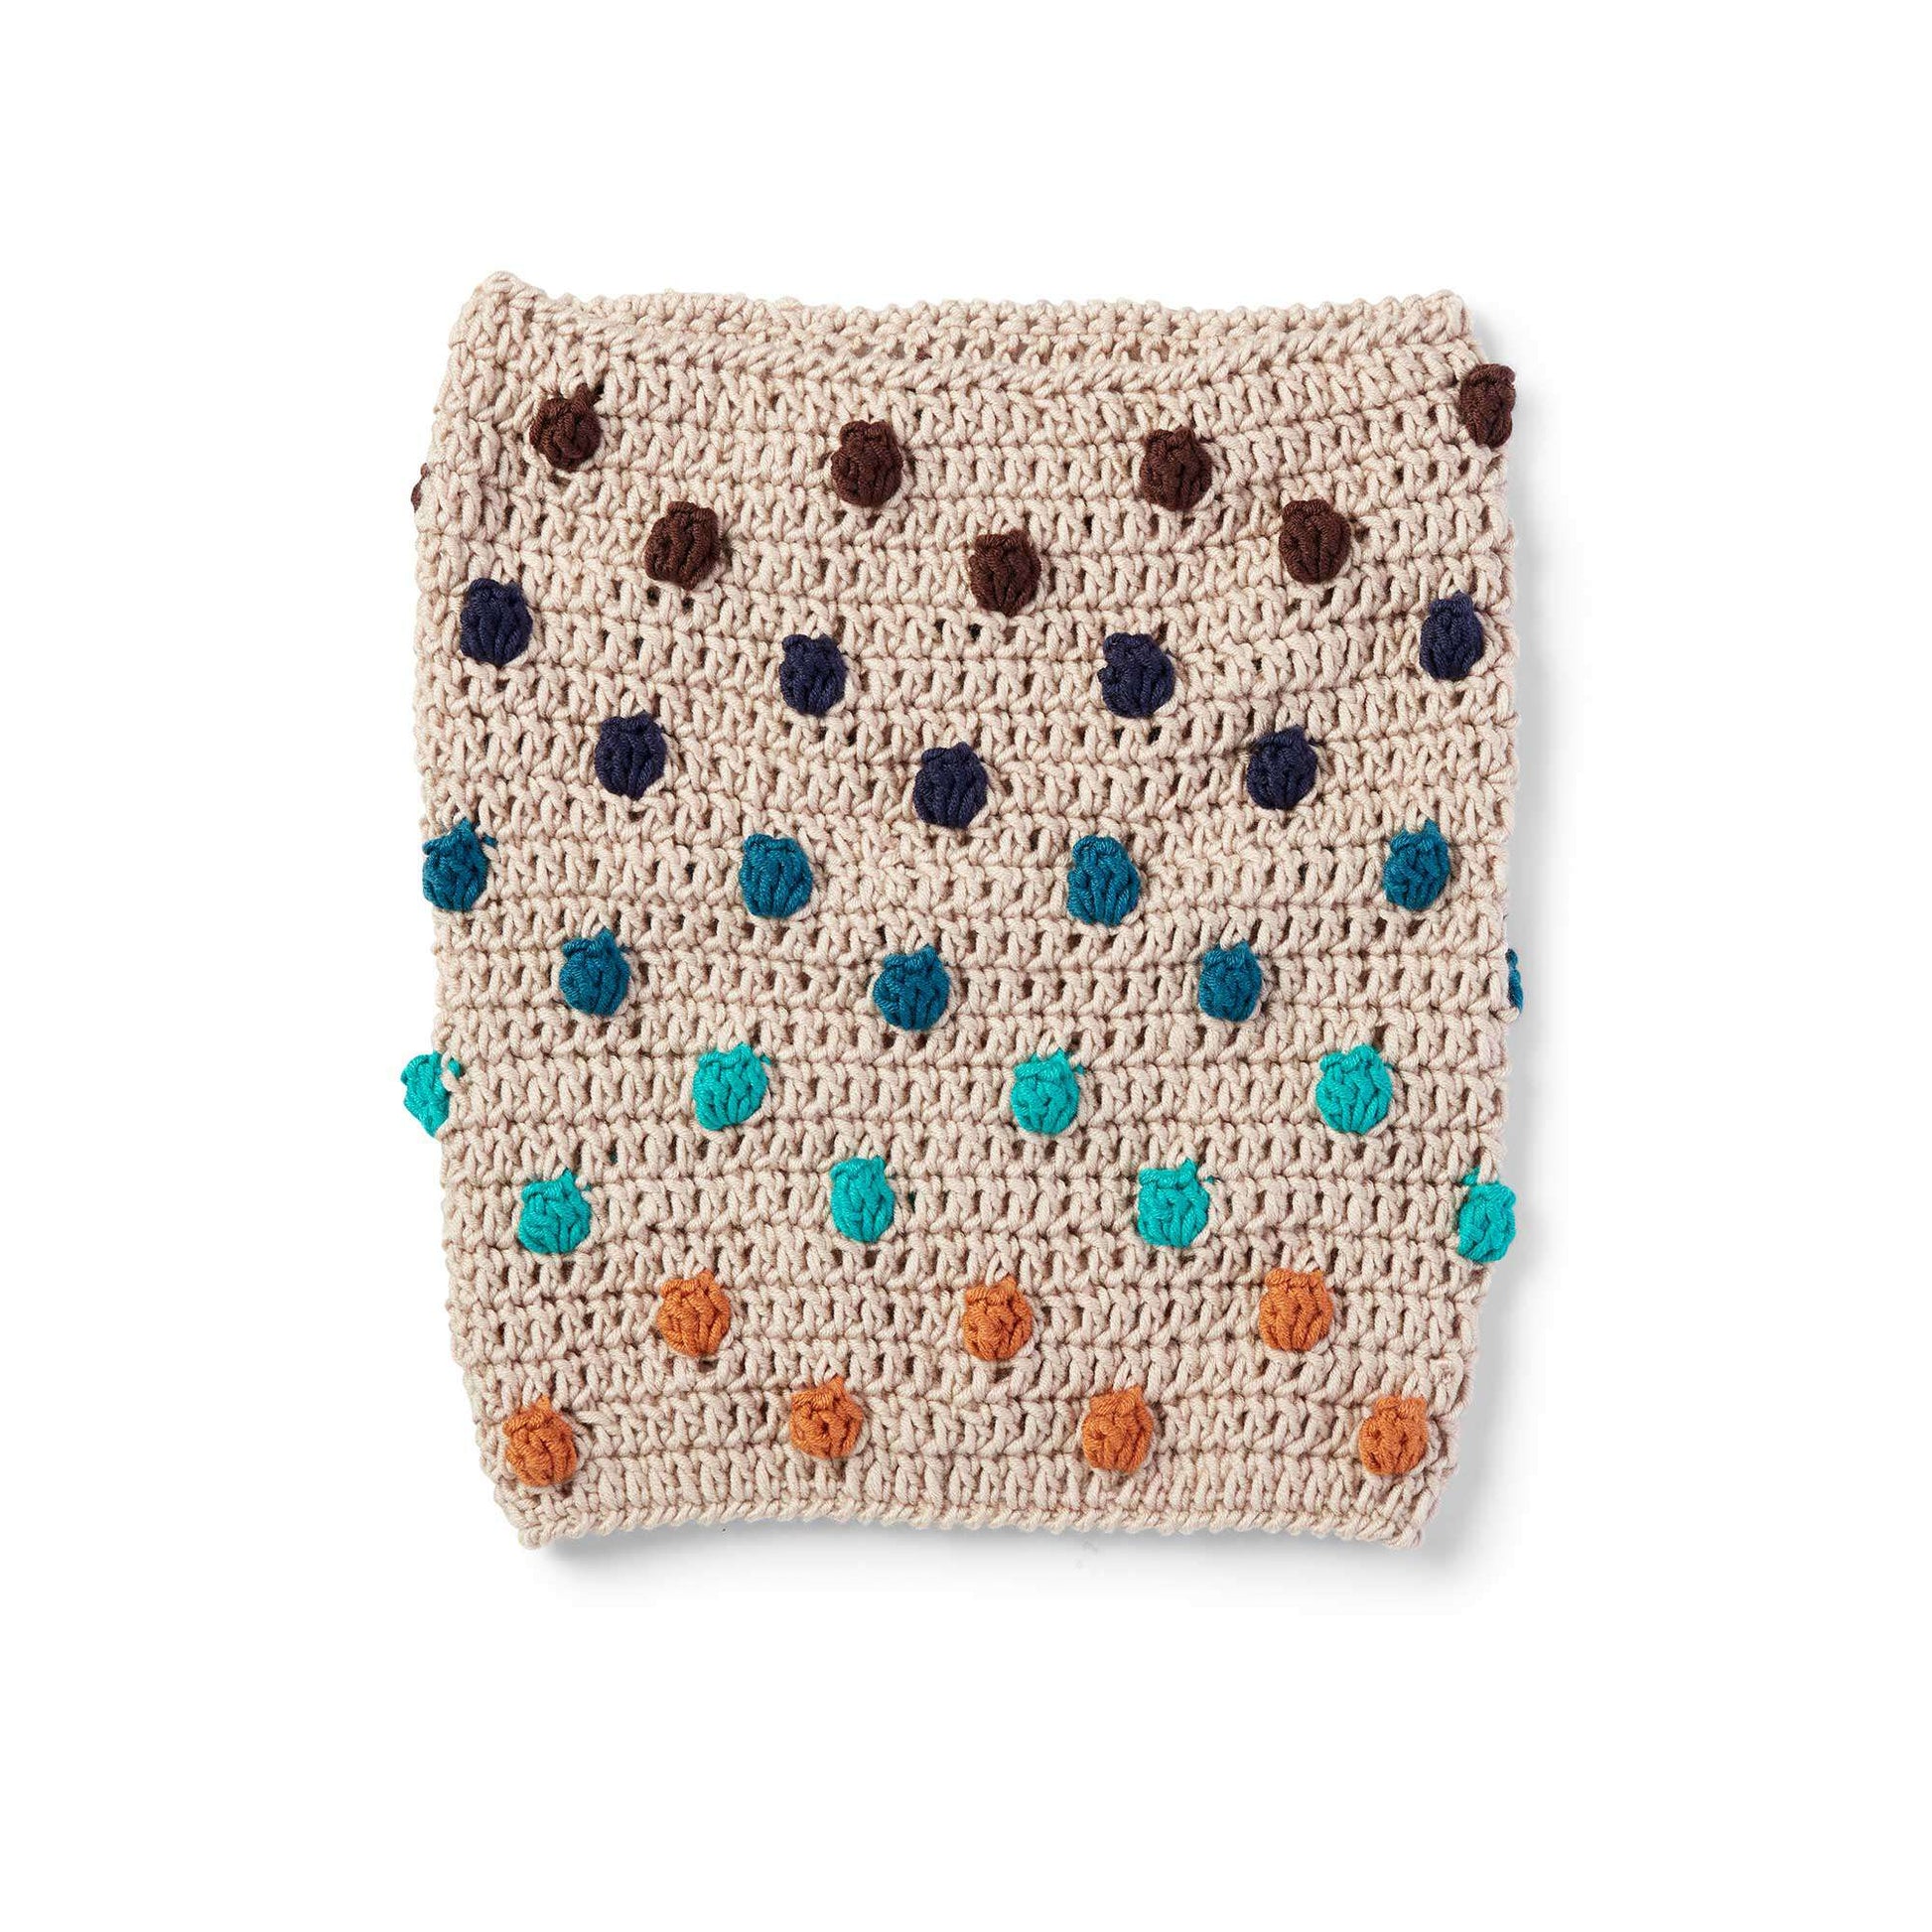 Free Caron X Pantone Bobble Pop Crochet Cowl Pattern